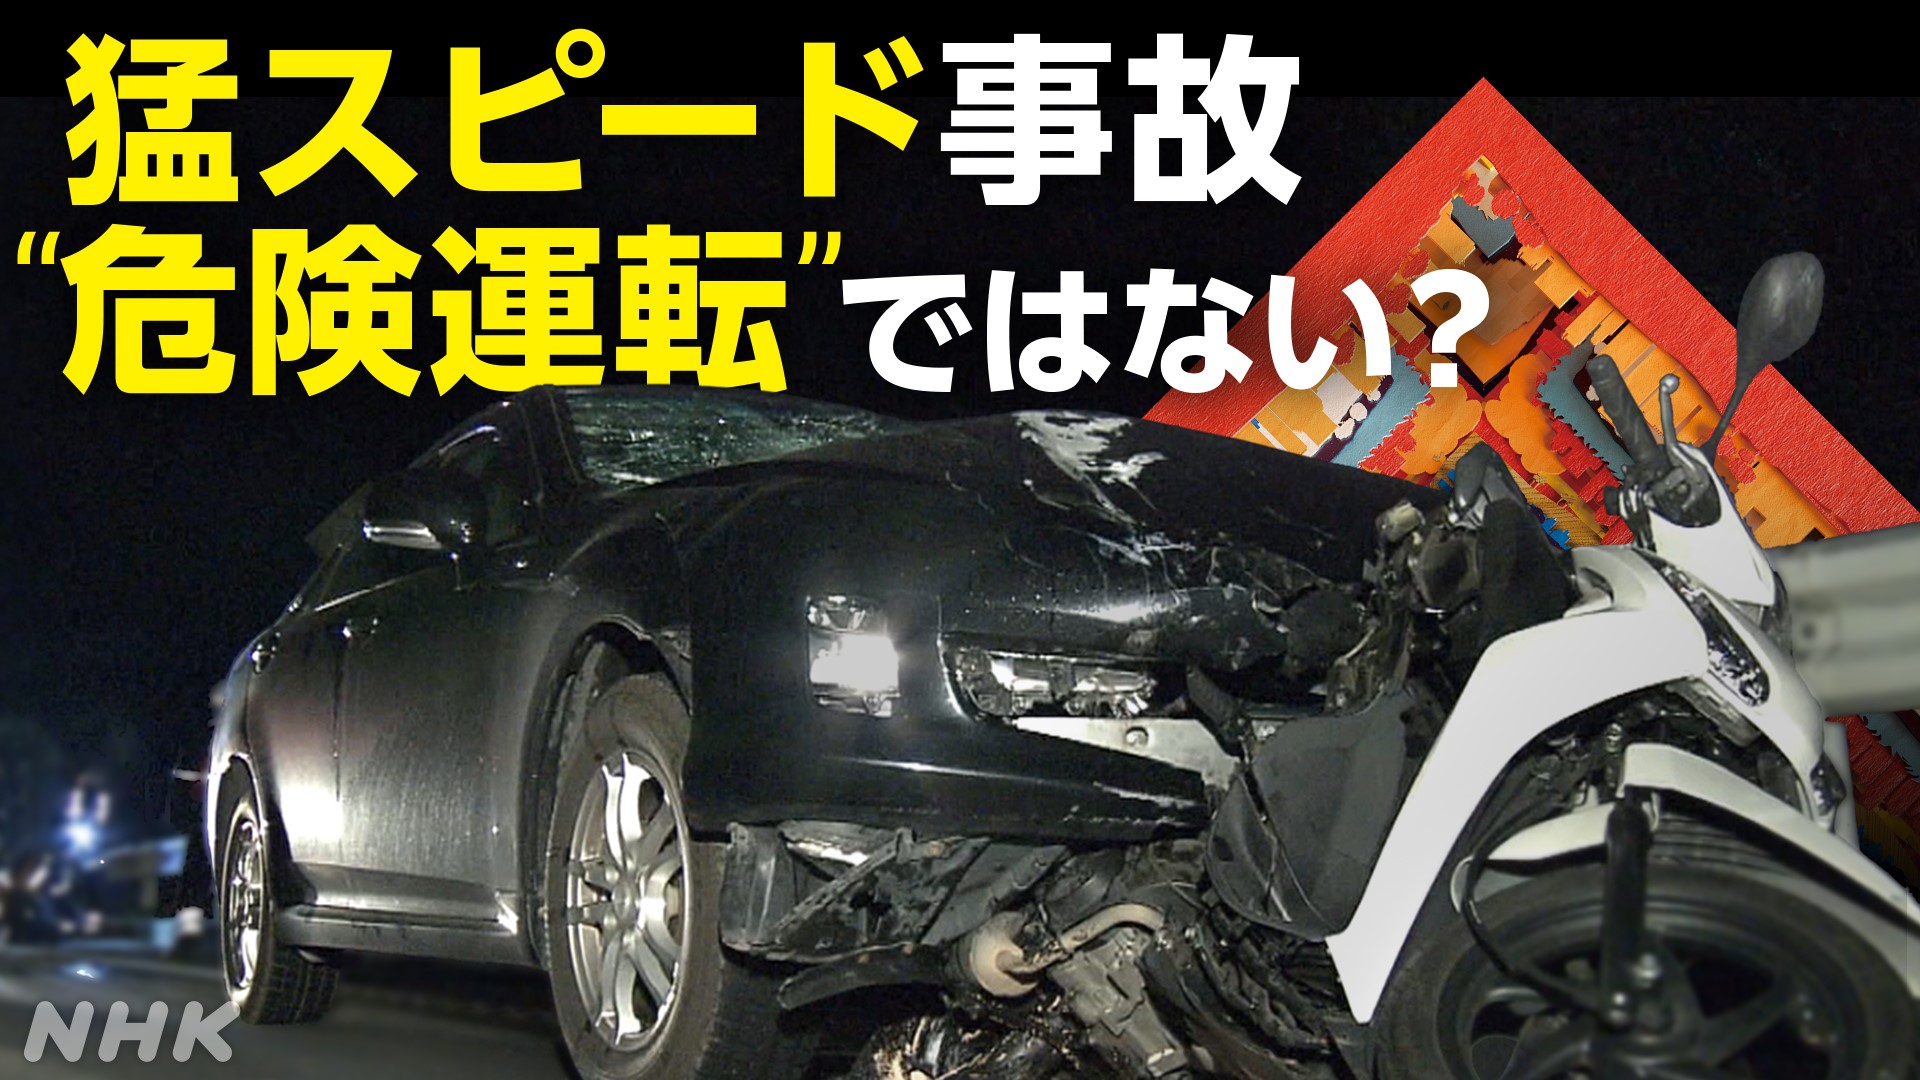 “危険”か“過失”か 「猛スピード運転」と死亡事故